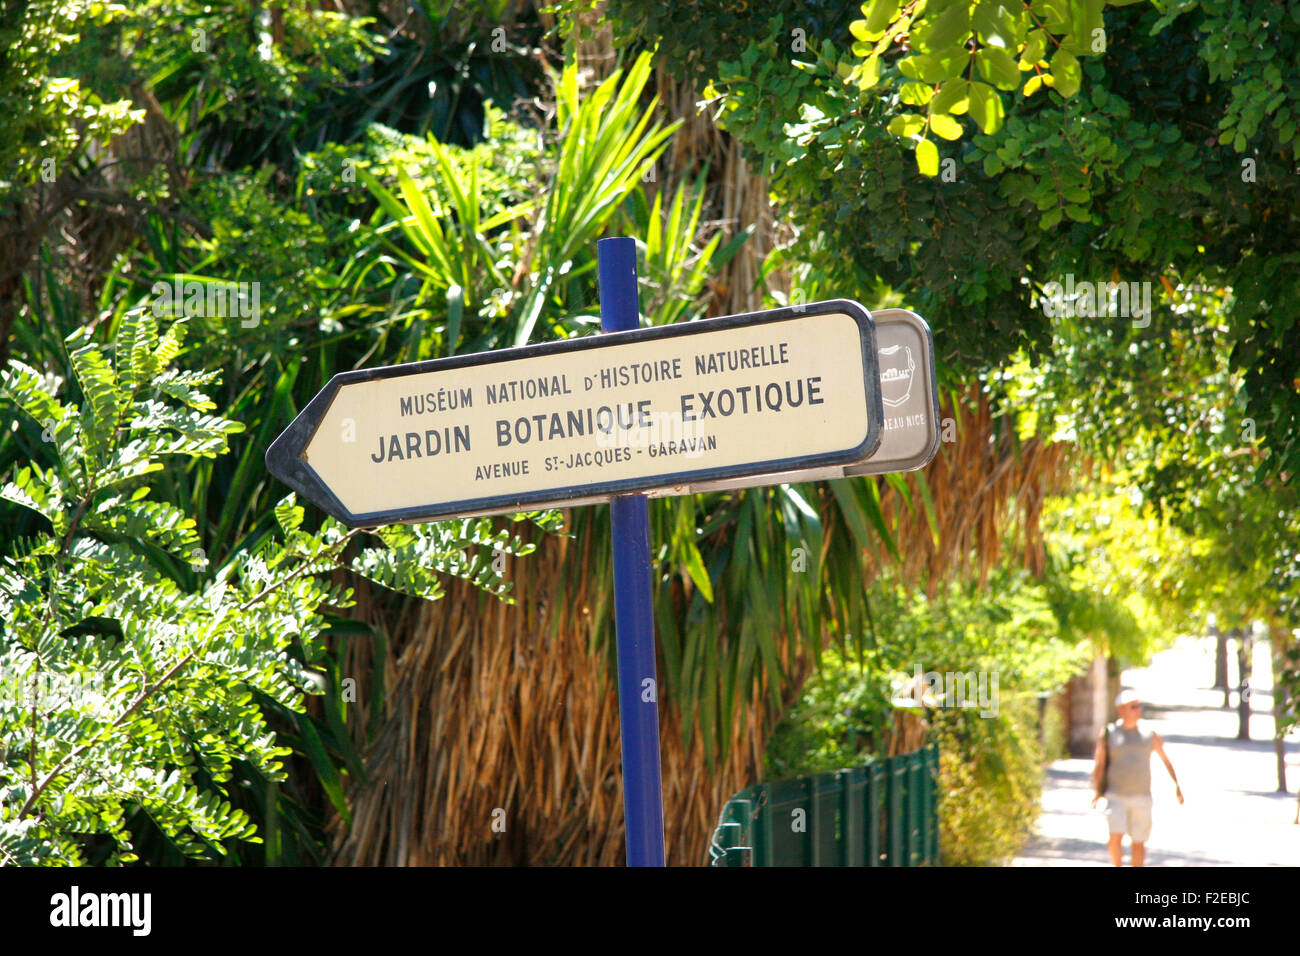 Jardin Bontanique Exotique, Menton, Cote d Azur, Frankreich/ Jardin Bontanique Exotique, Menton, Cote d'Azur, France. Stock Photo